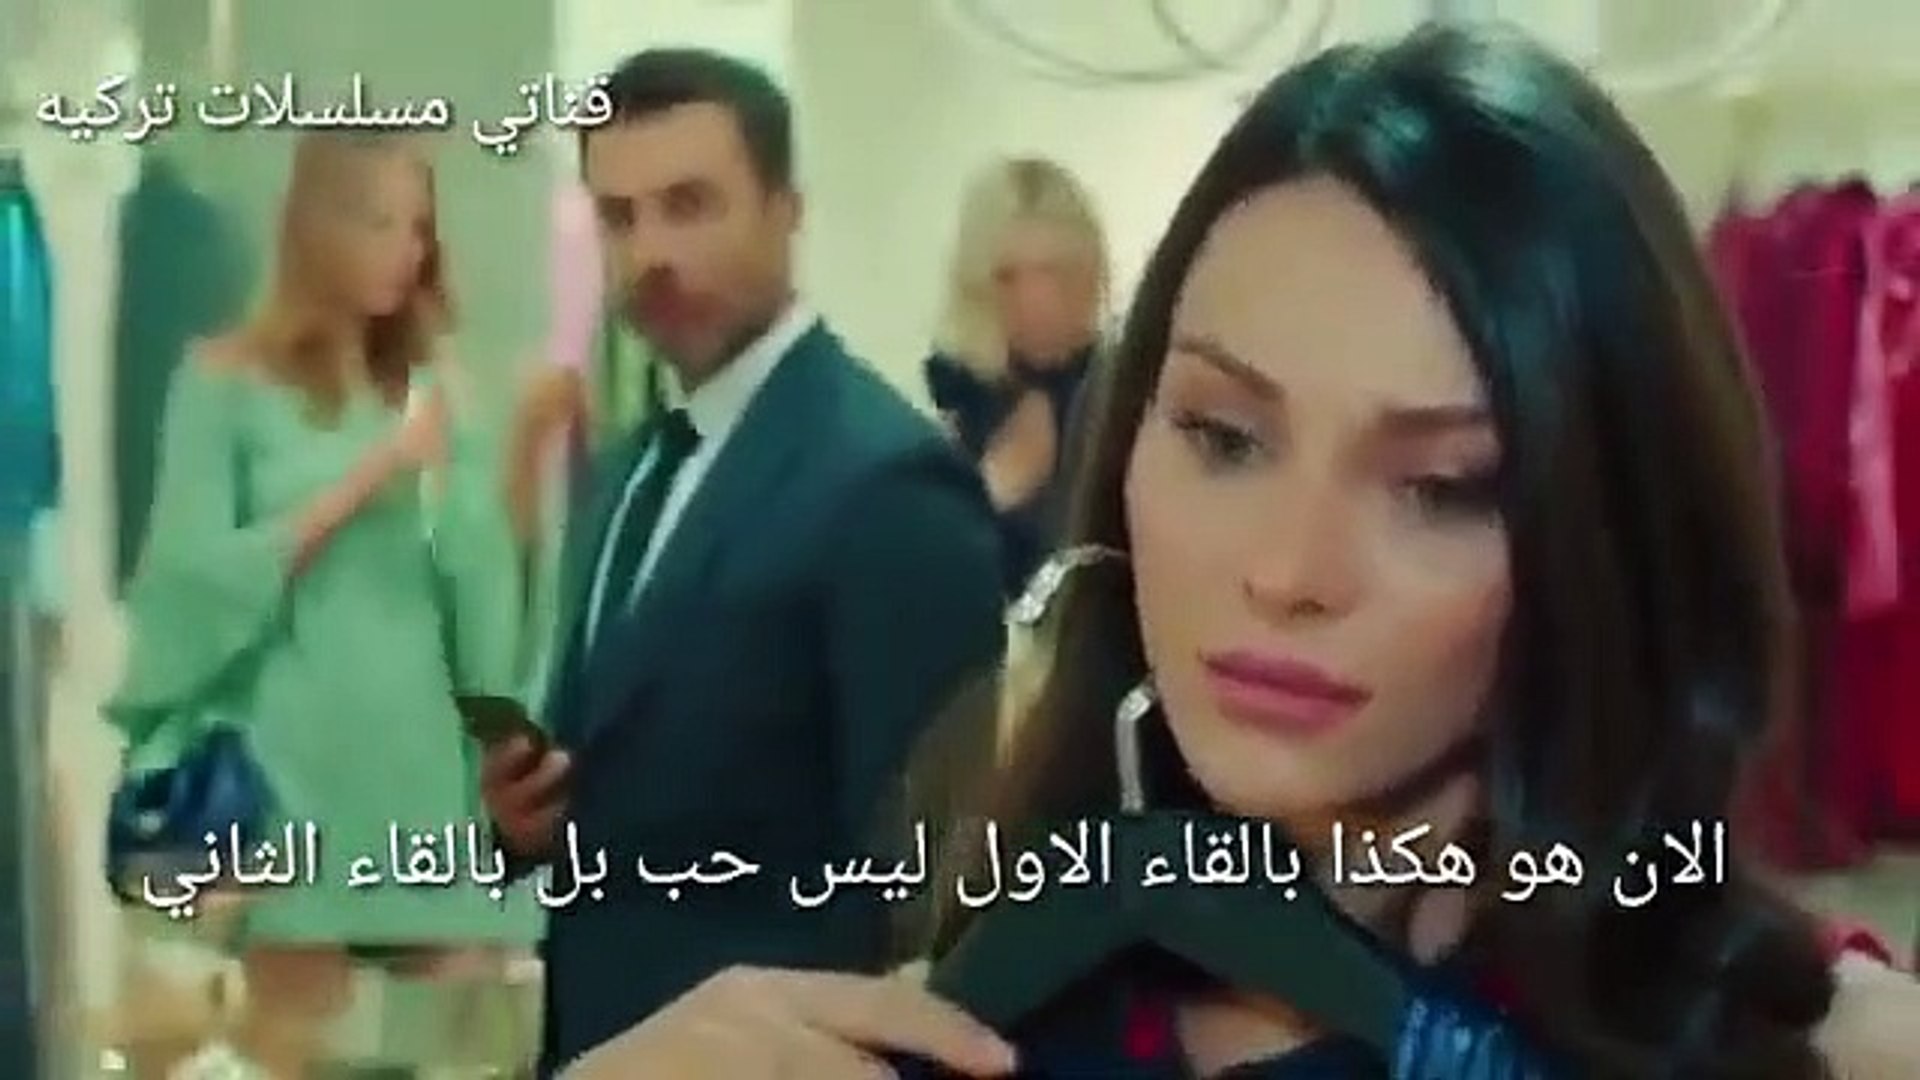 مسلسل التفاح الممنوع الموسم الثالث الحلقة 49 إعلان 2 مترجم للعربية فيديو Dailymotion